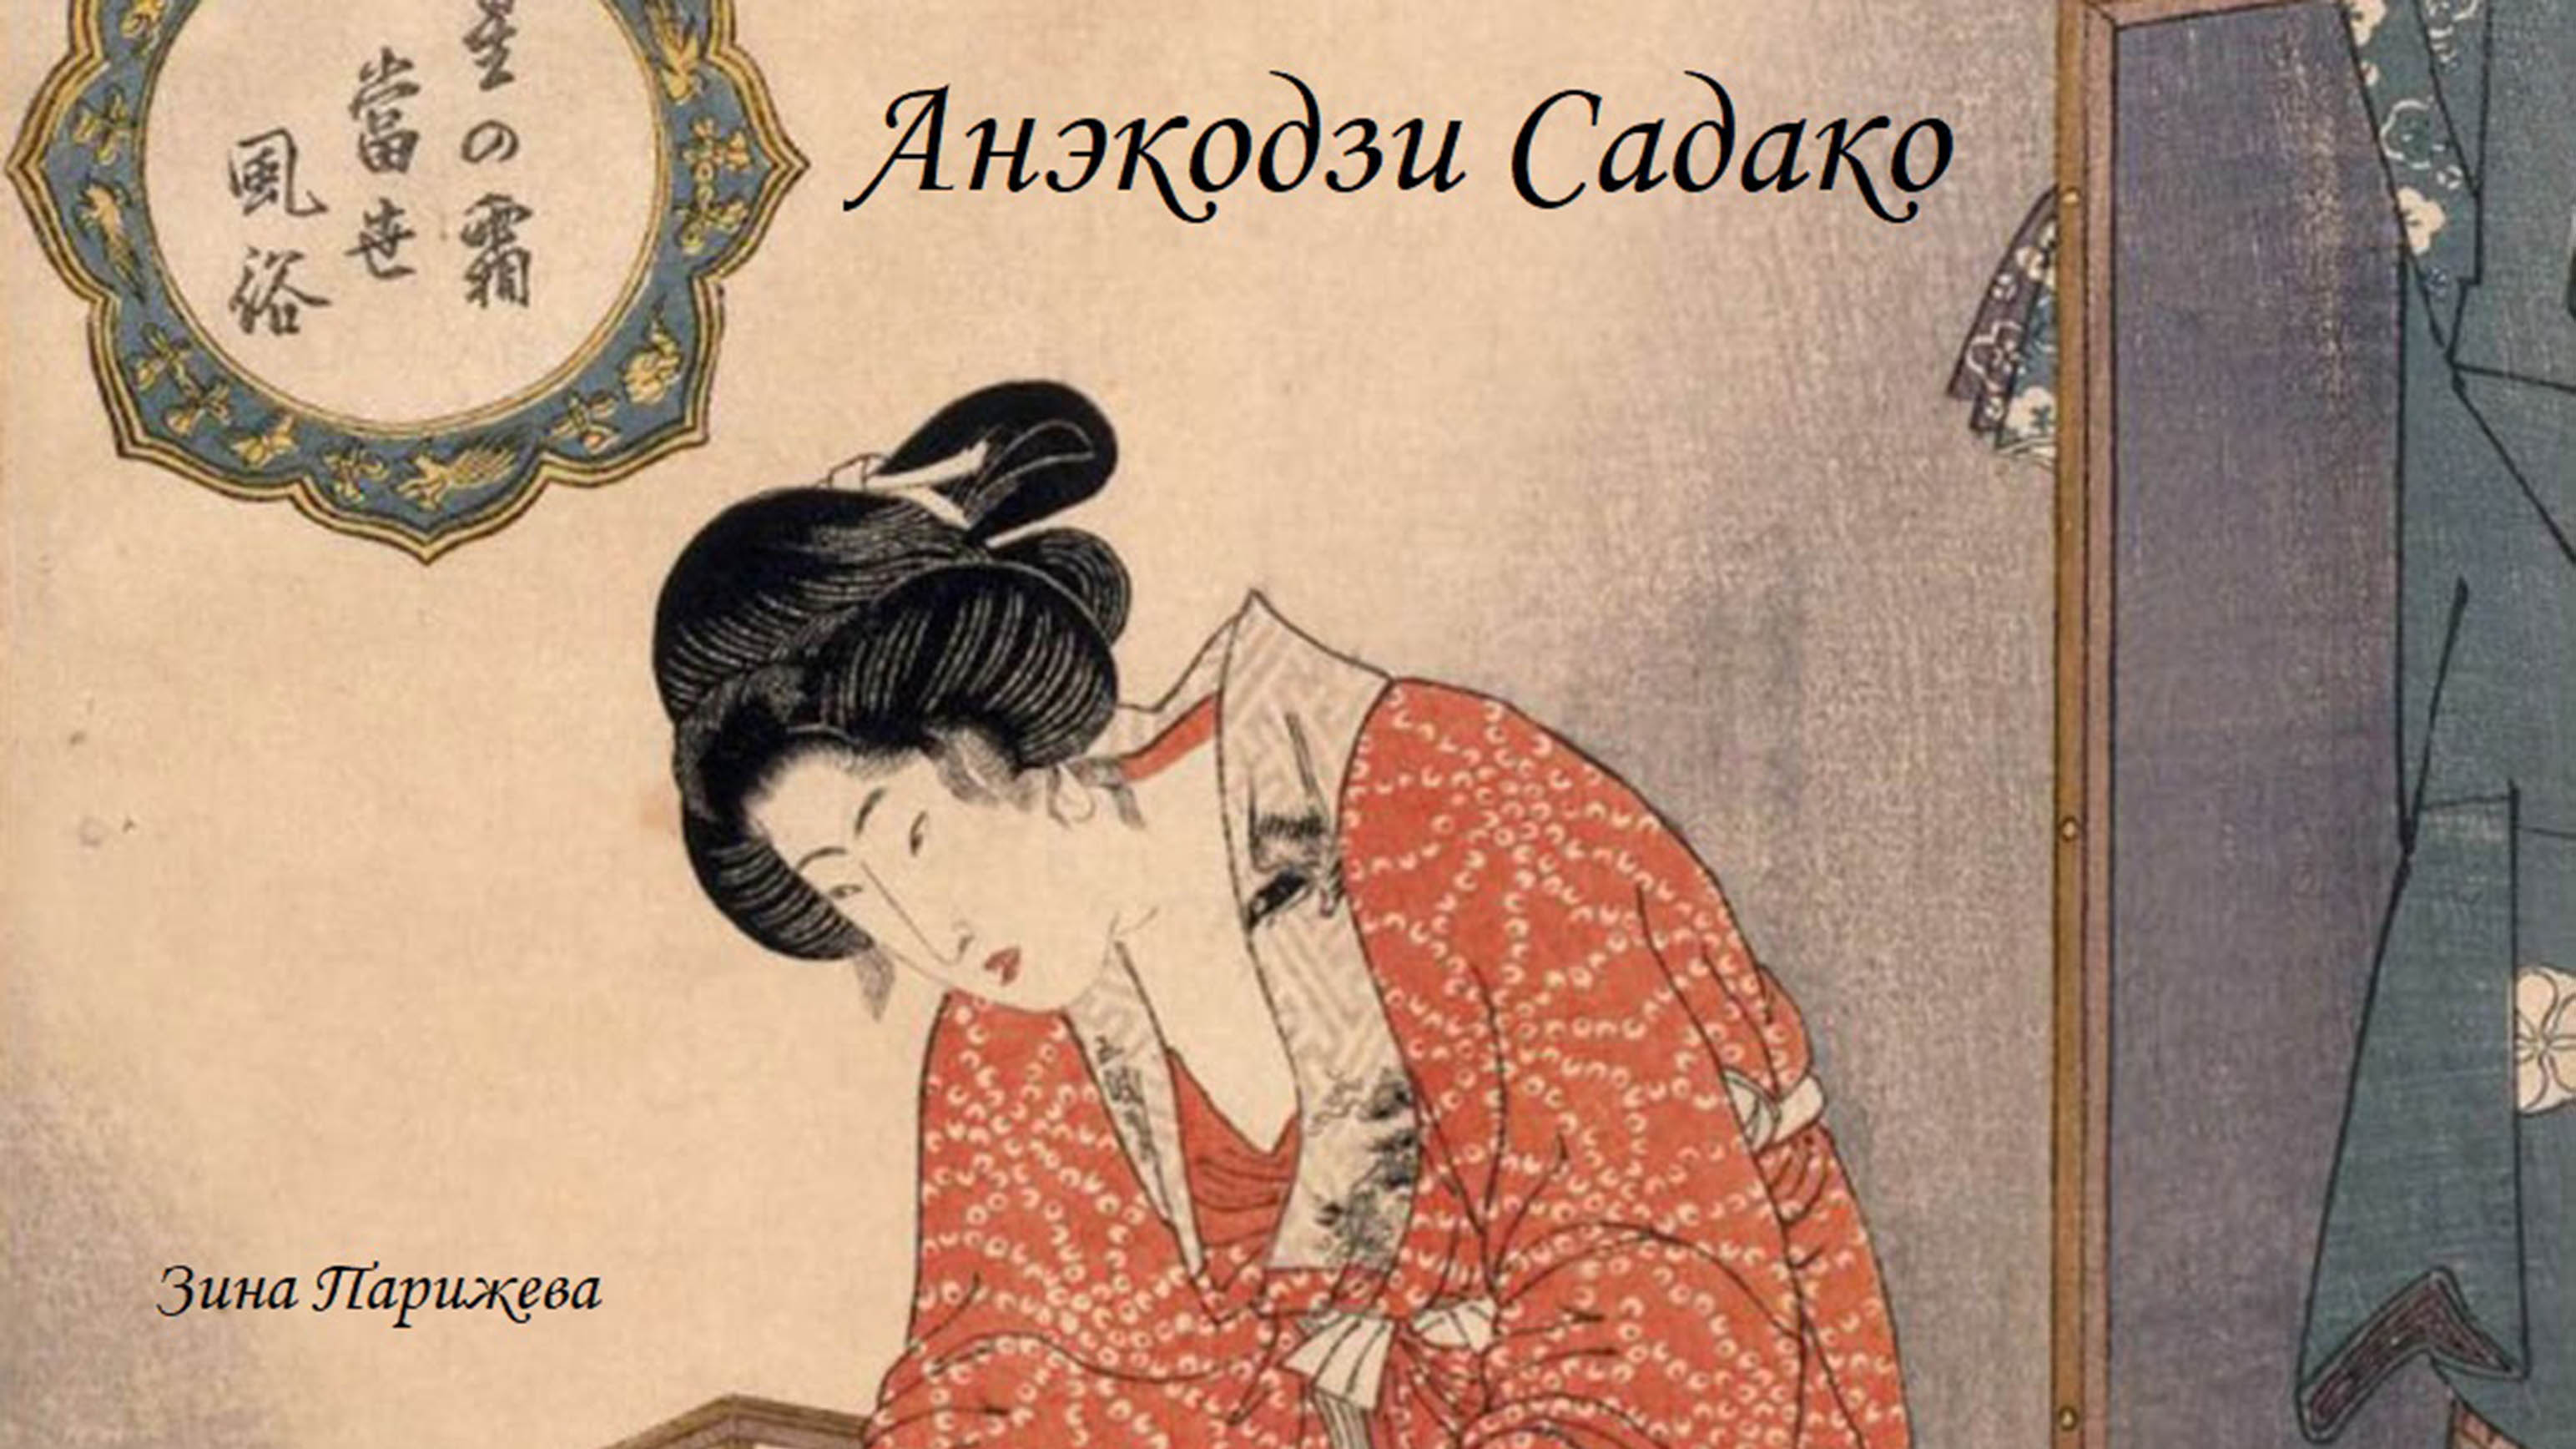 Фаворитки японских императоров: Анэкодзи Садако (1717 - 1789), фаворитка Сакурамати